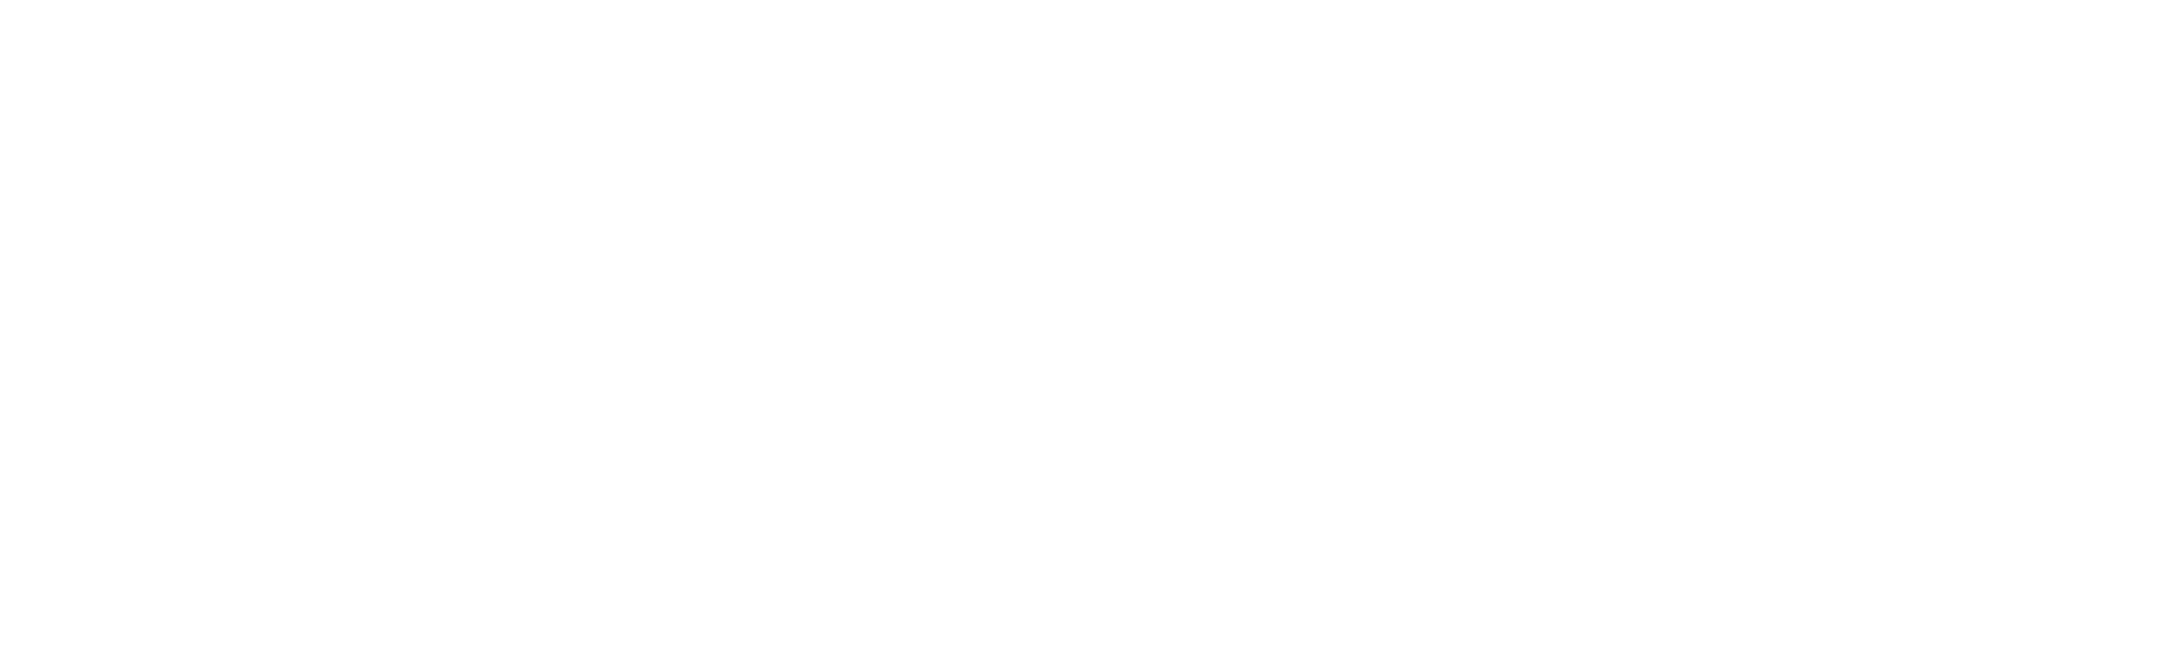 Deutsche_Telefon_Standard_Logo_weiß_2177x651